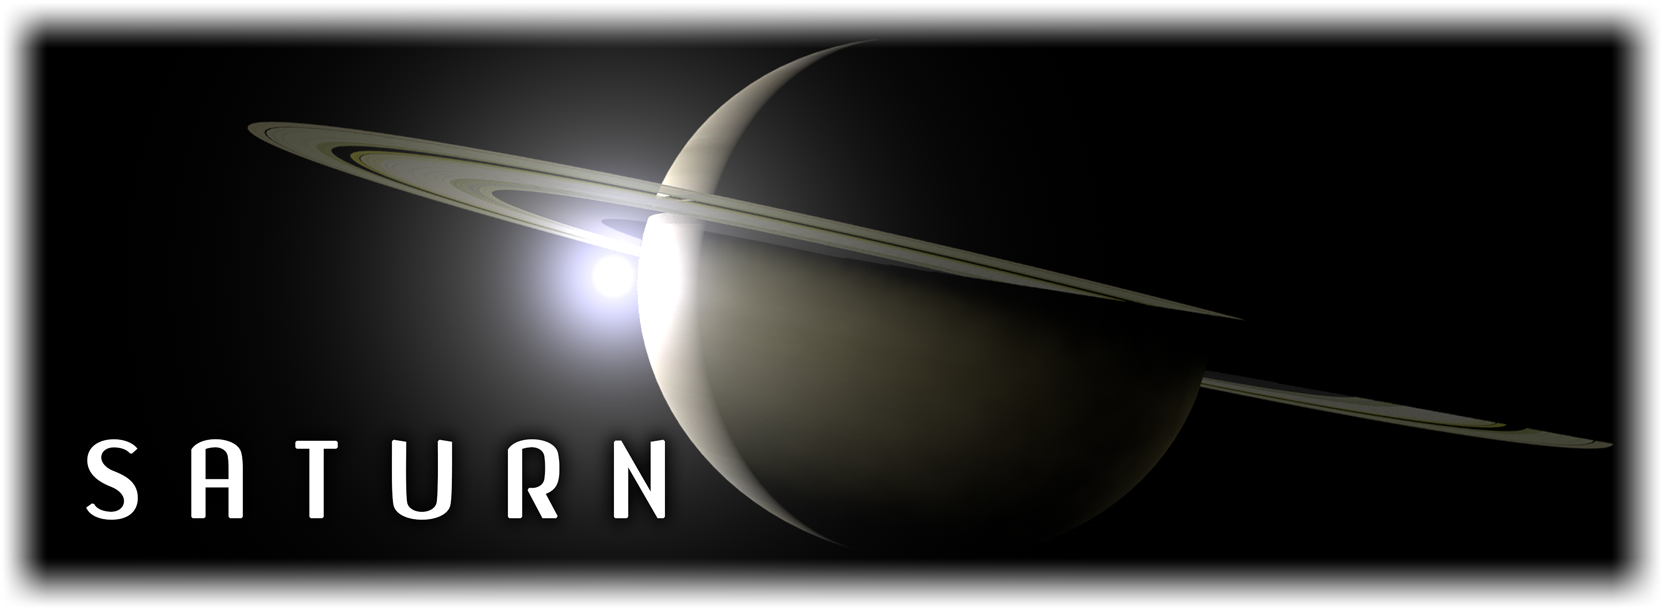 Saturn banner